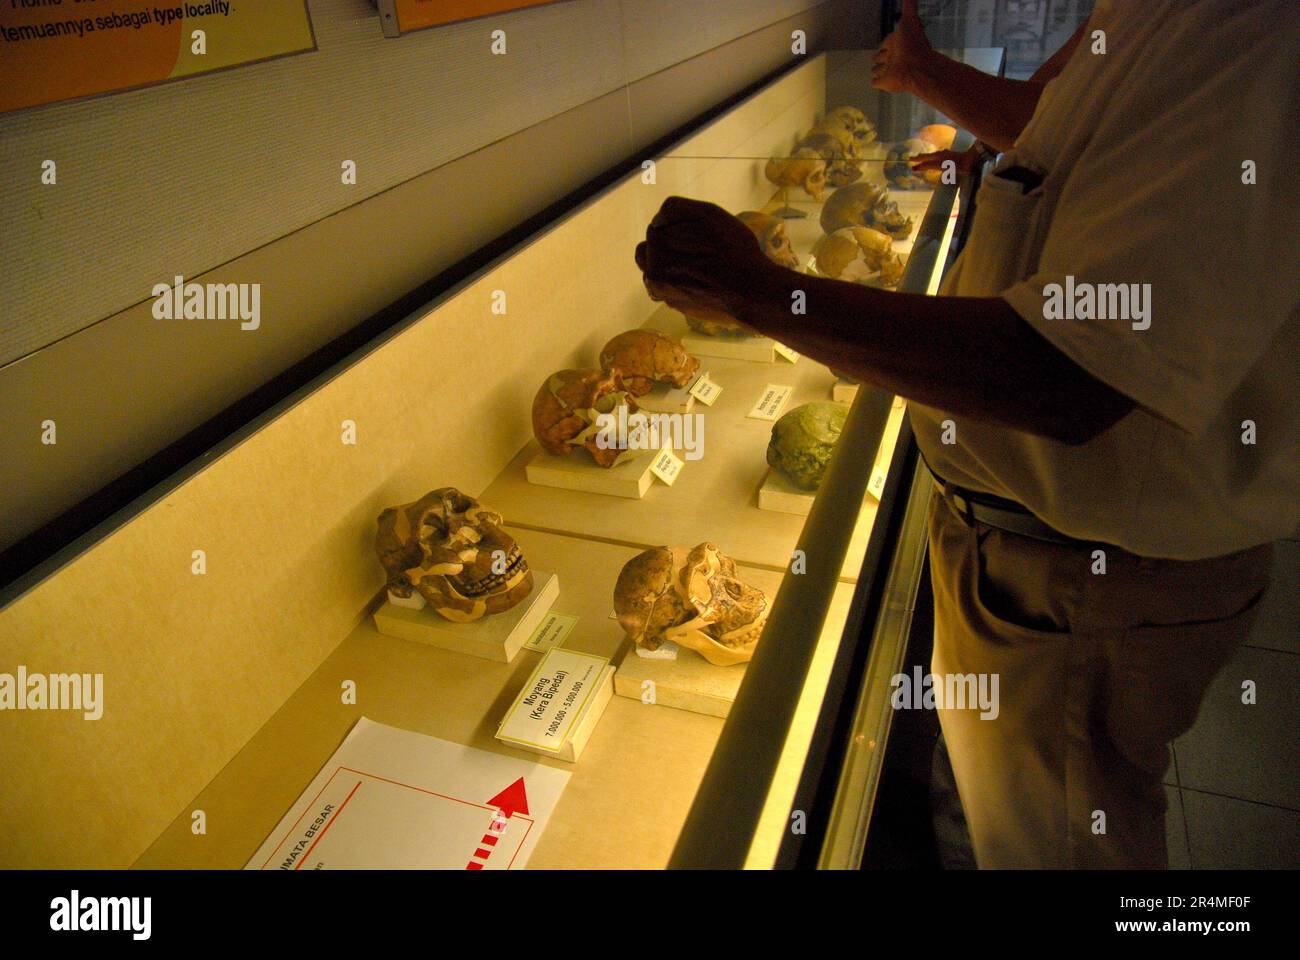 Le professeur de recherche en paléontologie Fachroel Aziz se trouve devant un cabinet de musée où sont placées les reconstructions de crânes hominidés, comme il donne des explications au Musée Geologi (Musée de géologie) à Bandung, Java Ouest, Indonésie. Banque D'Images